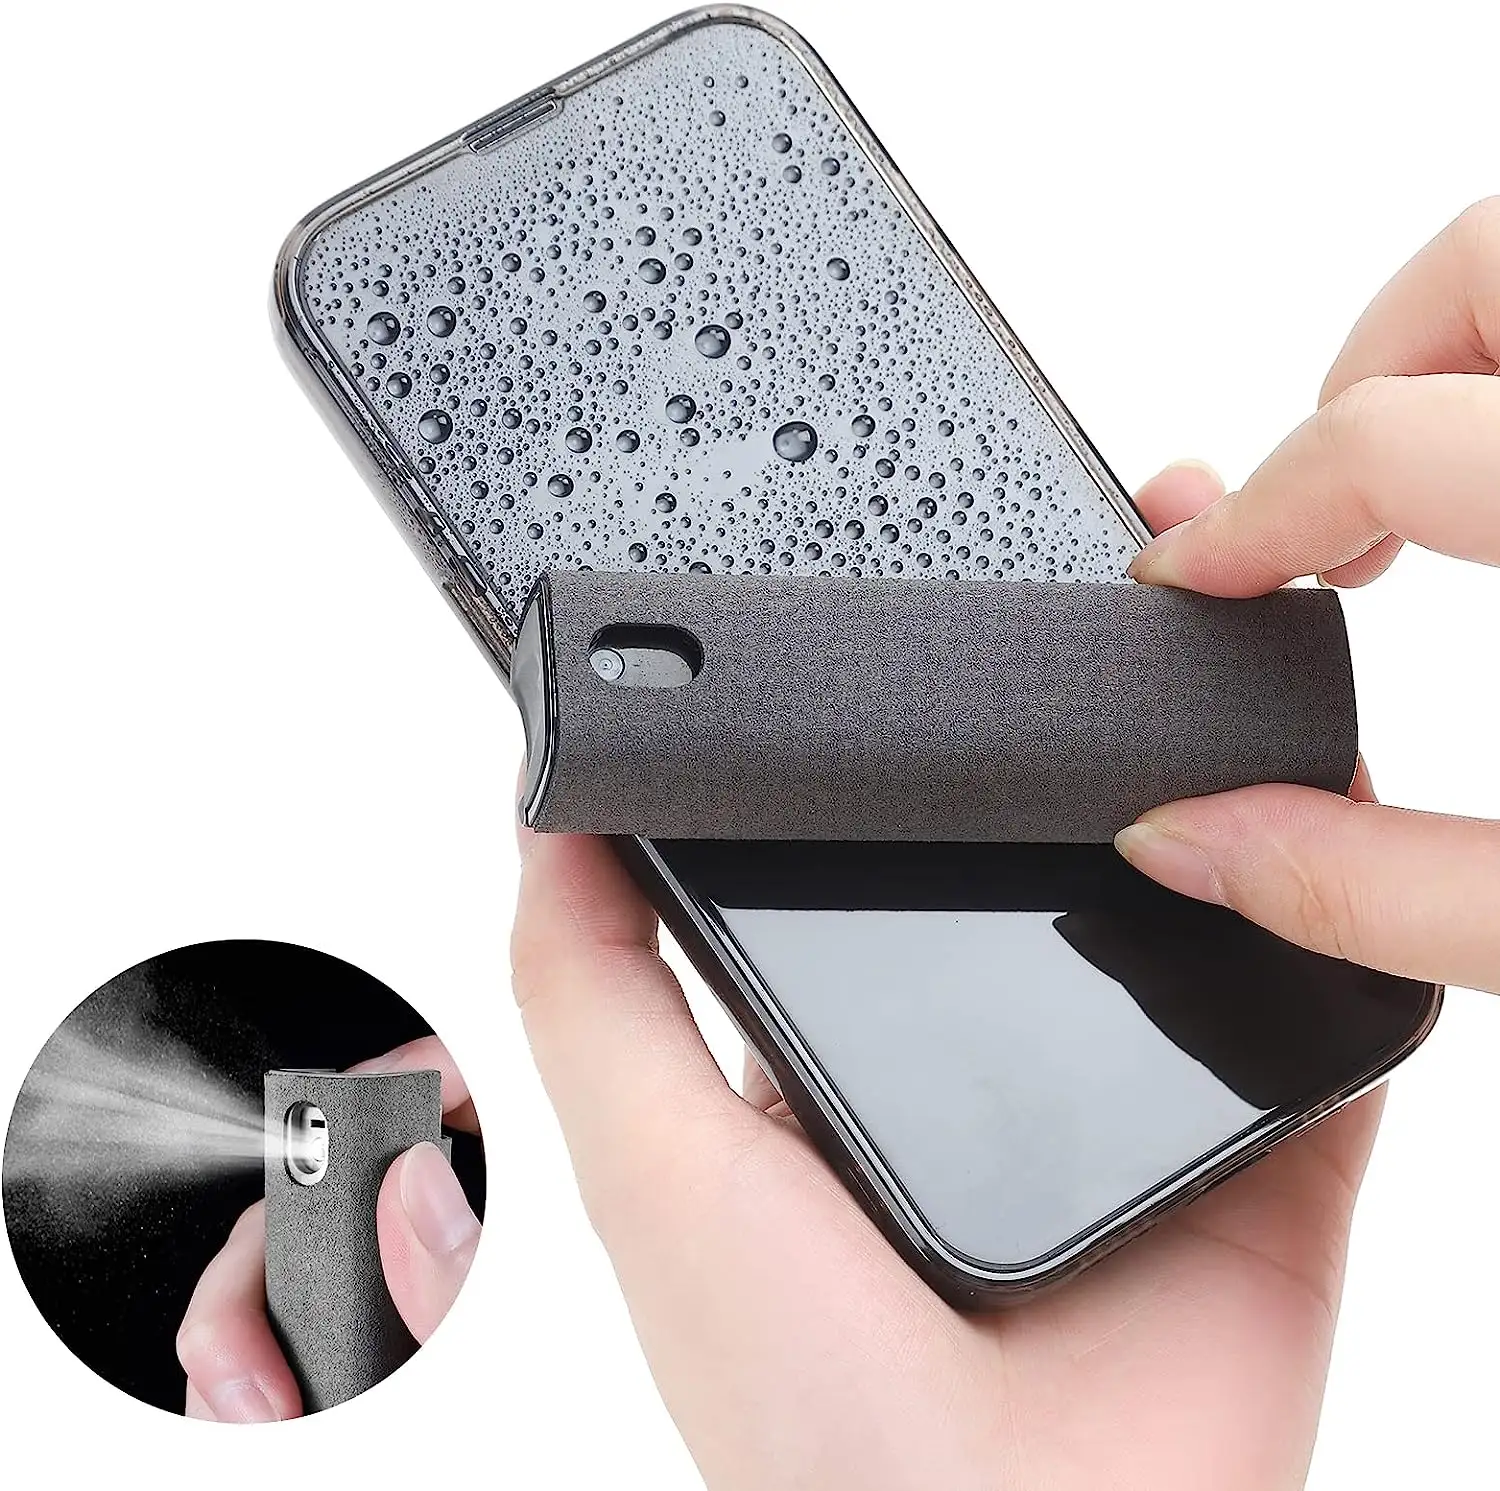 2023 OPULA neueste 2 in 1 Telefon Bildschirm reiniger Spray Display Bildschirm Reinigungs set Mikro faser Smartphone Bildschirm reiniger Kit